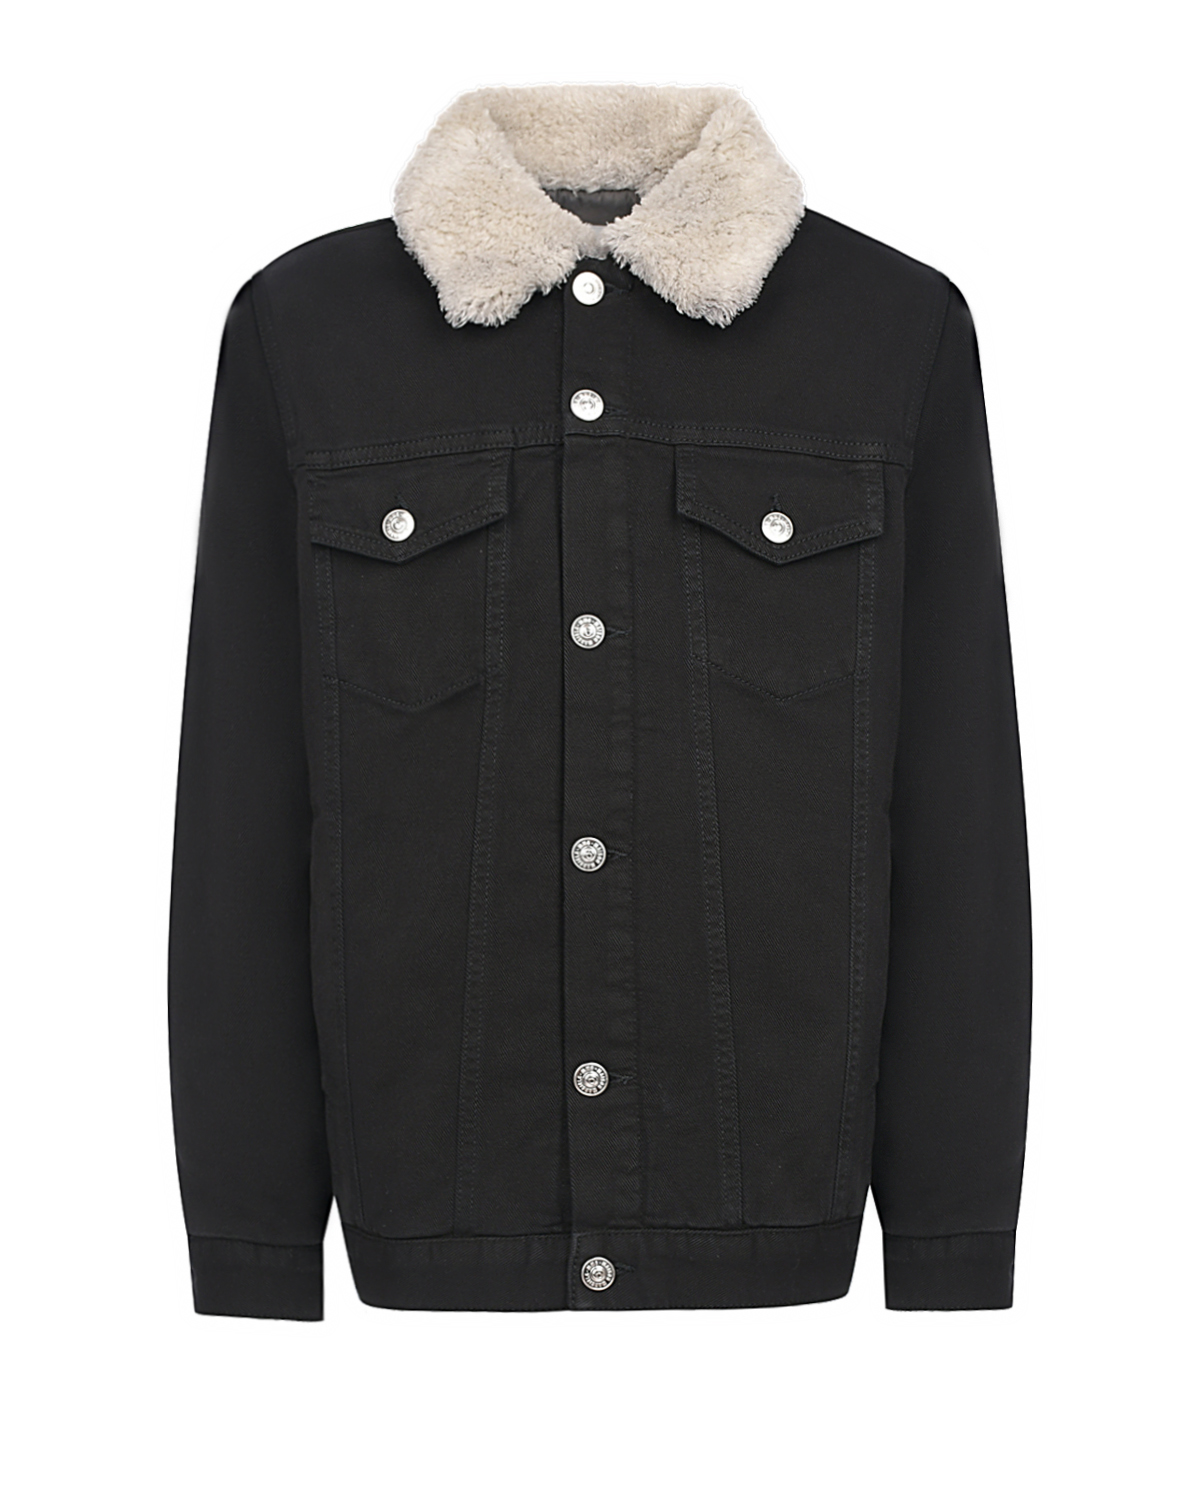 Джинсовая куртка с плюшевым воротником MM6 Maison Margiela детская, размер 140, цвет черный